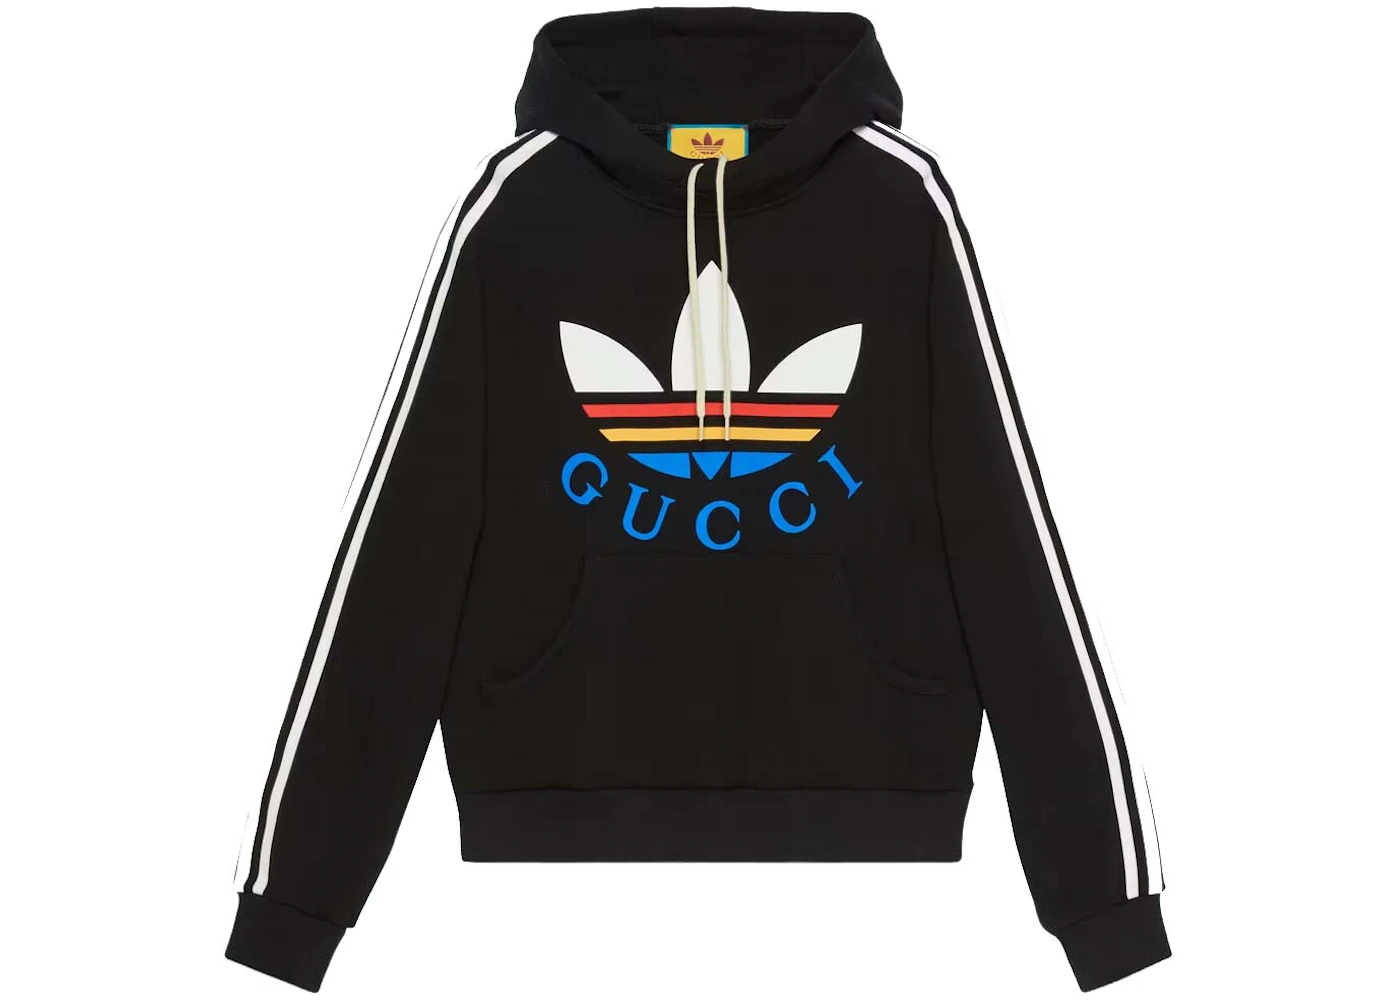 Gucci x adidas Cotton Sweatshirt Black/Multicolor Men's - FW22 - US